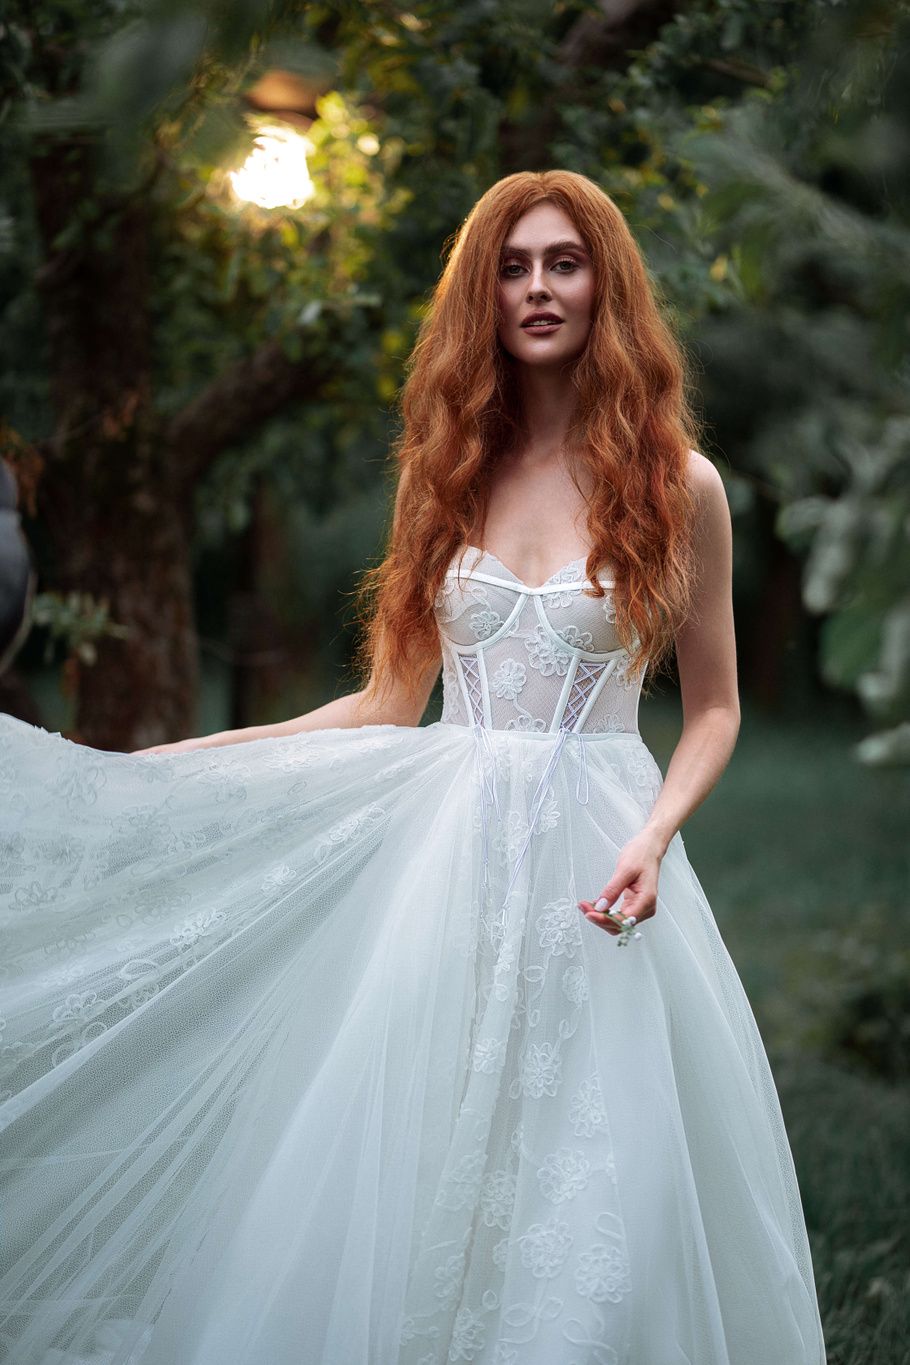 Купить свадебное платье «Беллона» Бламмо Биамо из коллекции Свит Лайф 2021 года в Екатеринбурге